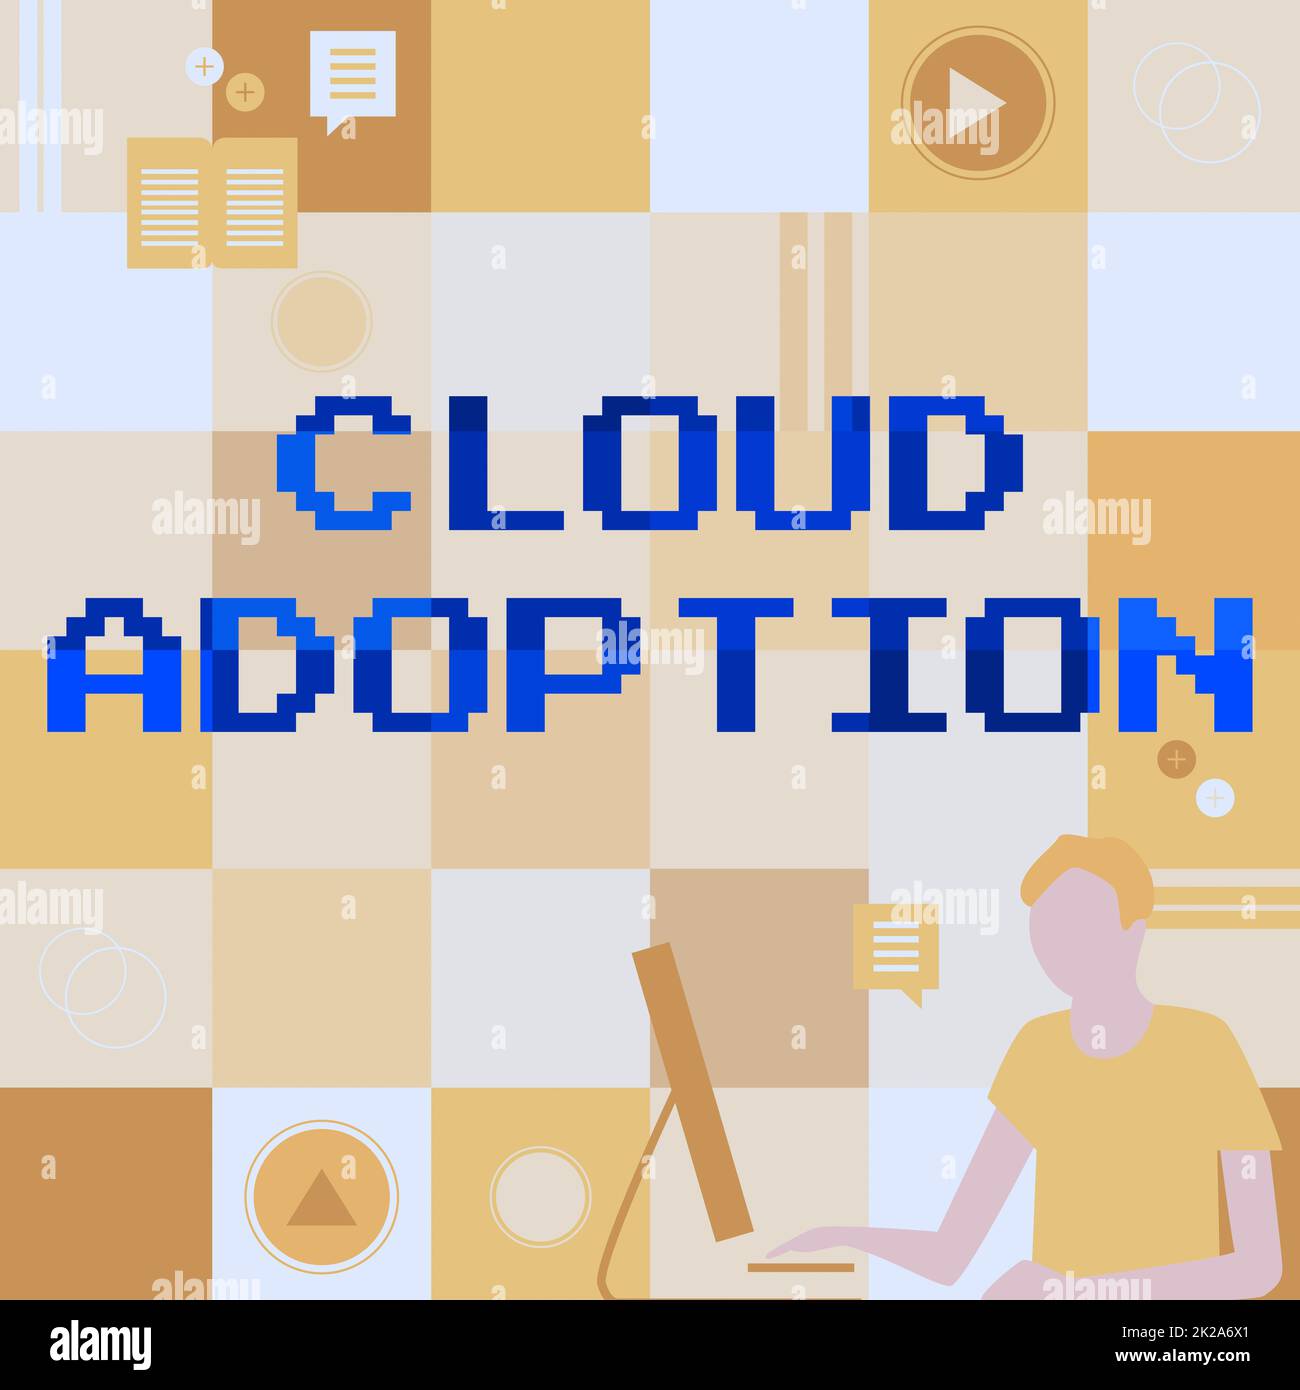 Text mit Inspiration Cloud Adoption. Internetkonzept strategischer Schritt von Organisationen zur Kostensenkung und Risikosenkung Geschäftsmann innovatives Denken und führende Ideen für eine stabile Zukunft. Stockfoto